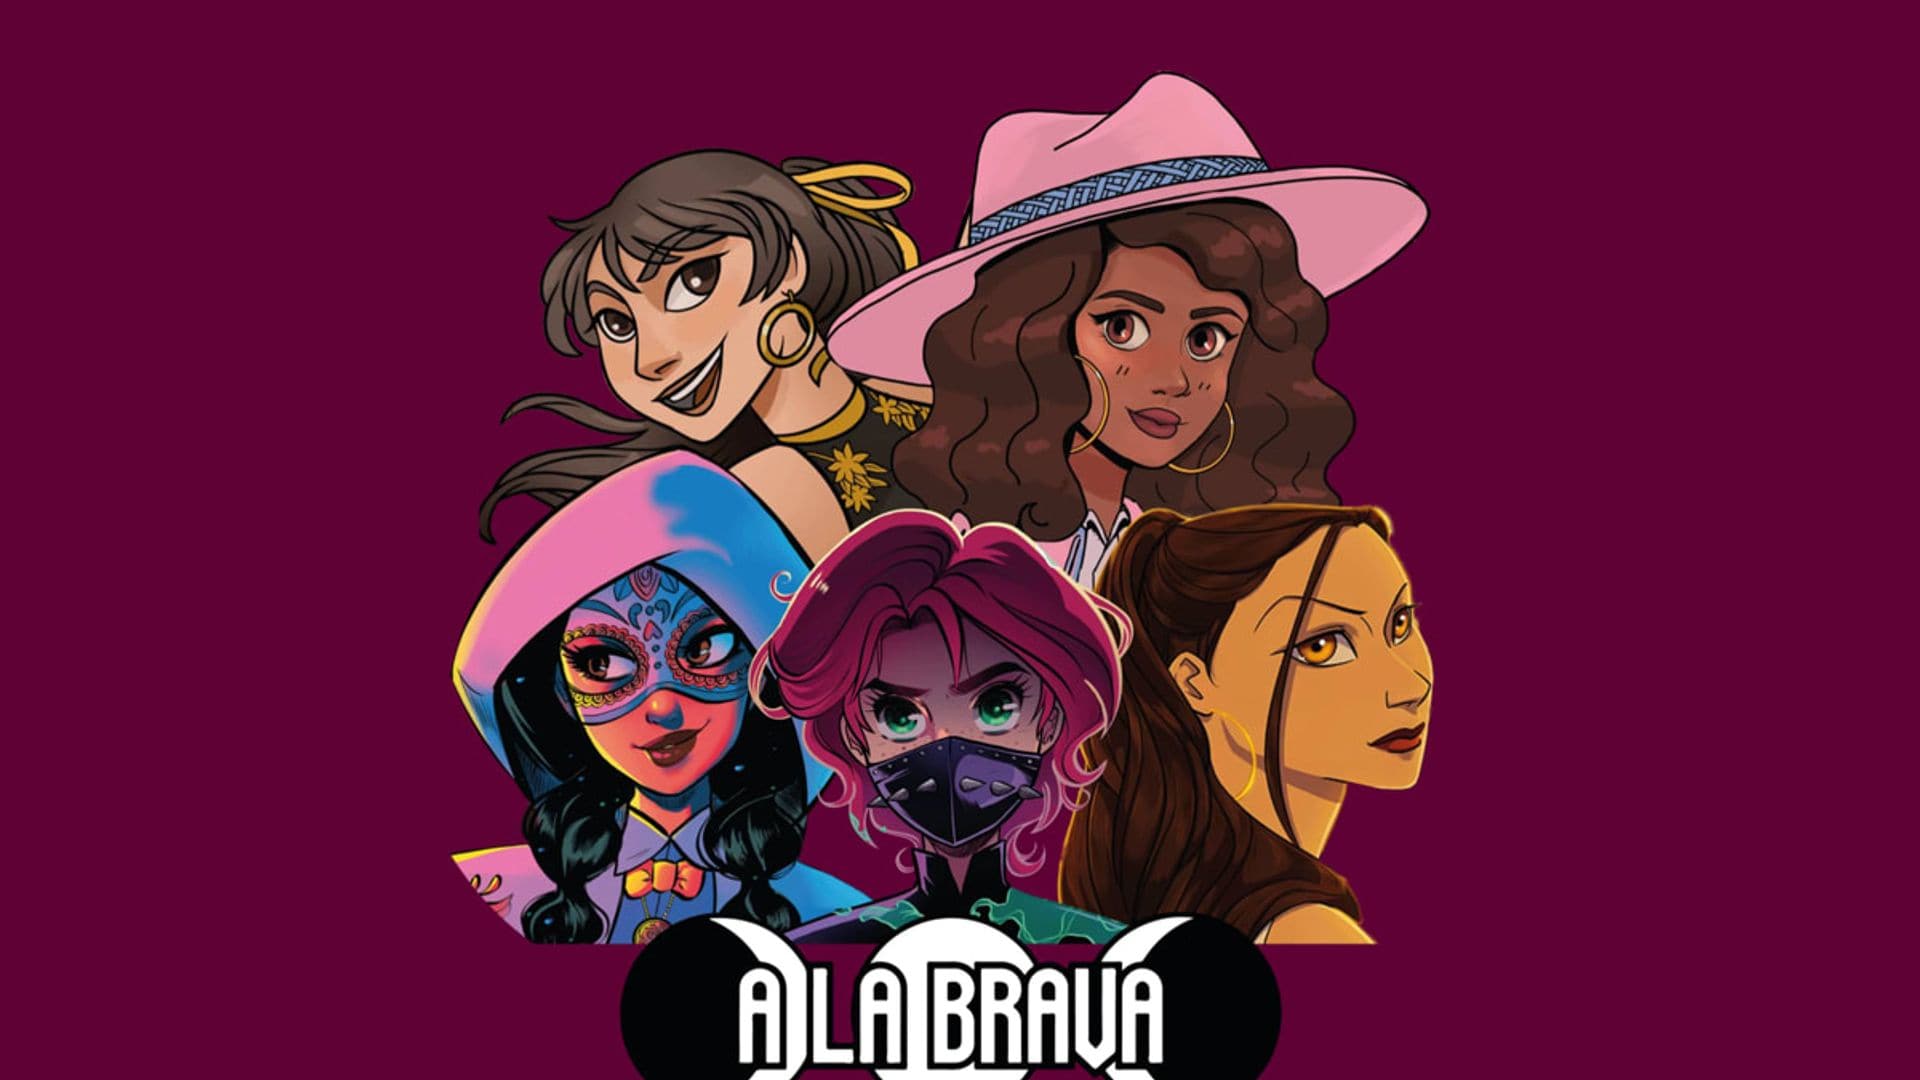 All-Latina superhero series ‘A La Brava’ makes Comic-Con debut